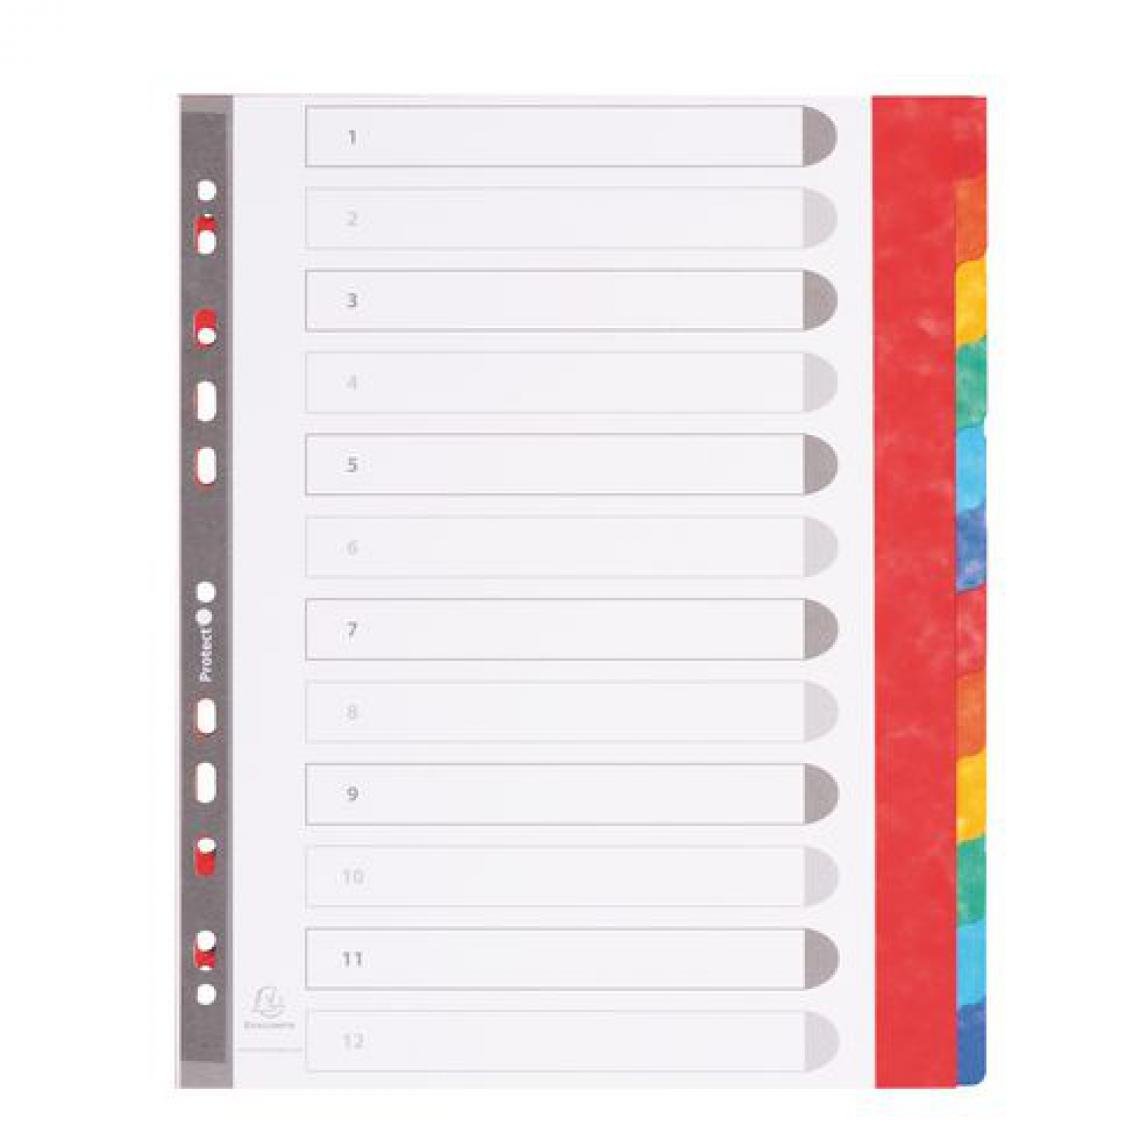 Exacompta - Intercalaire A4+ carte lustrée colorée Exacompta 12 onglets neutres multicolores - 1 jeu - Accessoires Bureau